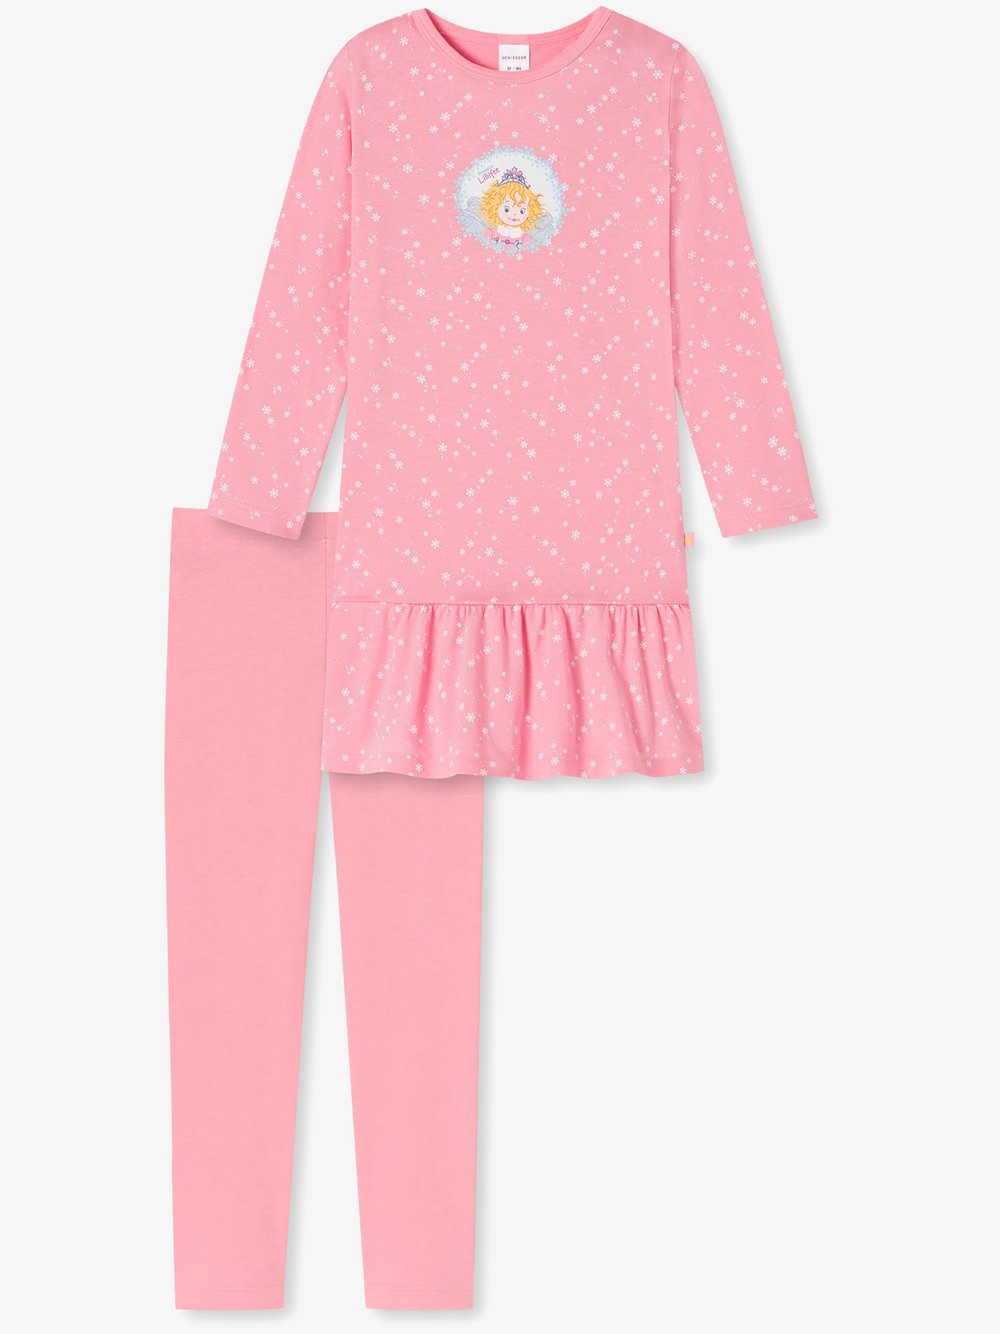 Schiesser Pyjama Prinzessin Lillifee Mode & Accessoires Kleidung Nachtwäsche & Homewear Schlafanzüge 